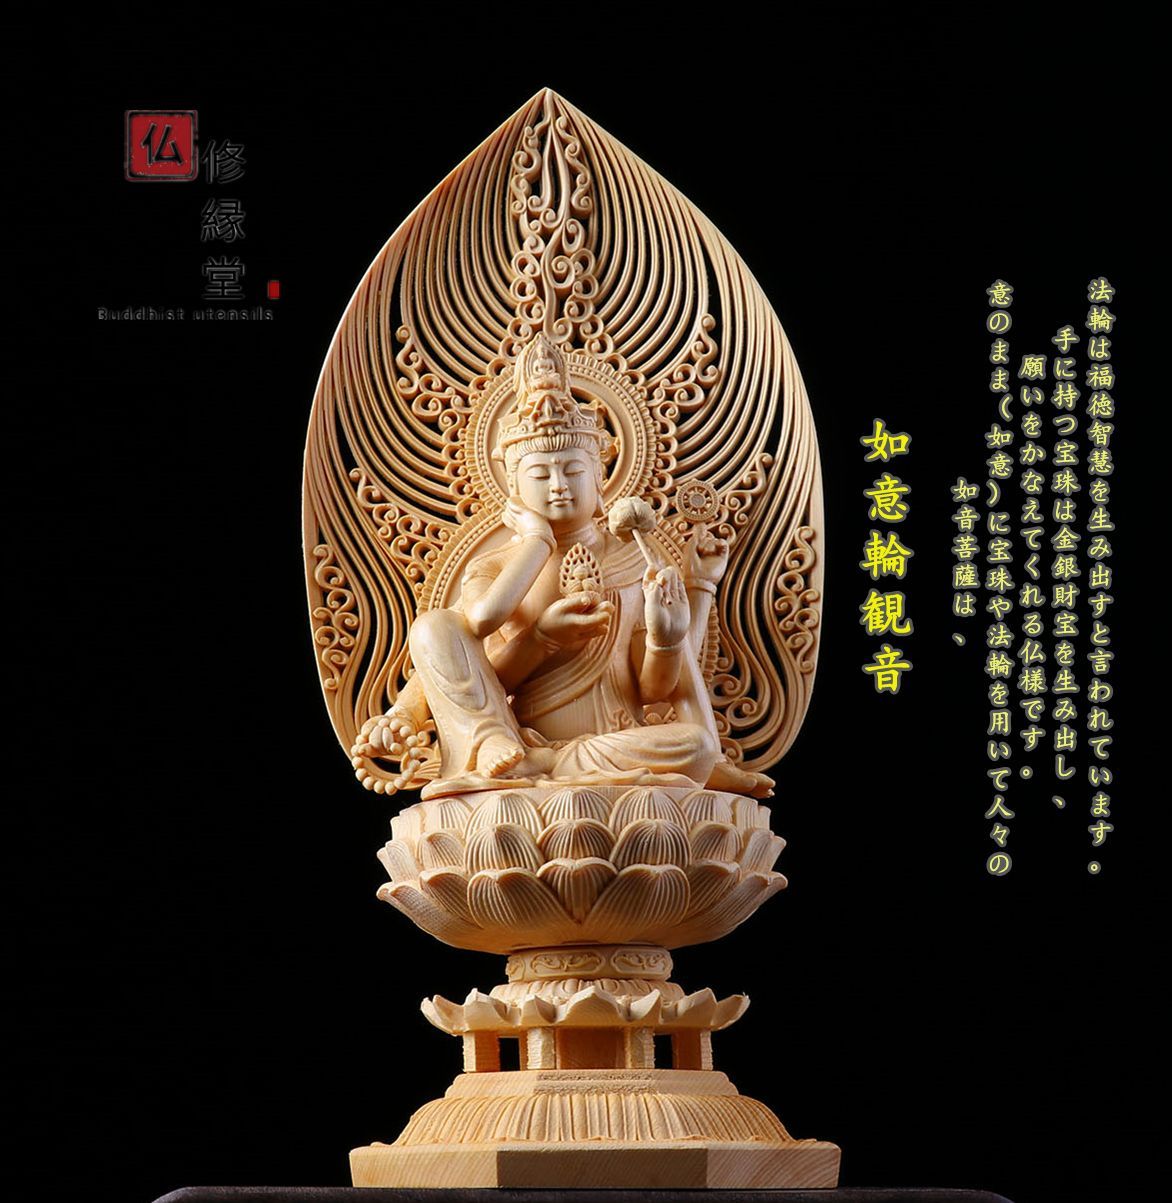 超激得通販木彫り 仏像 薬師如来三尊座像 財前彫刻 一刀彫 天然木檜材 仏教工芸品 彫刻・オブジェ